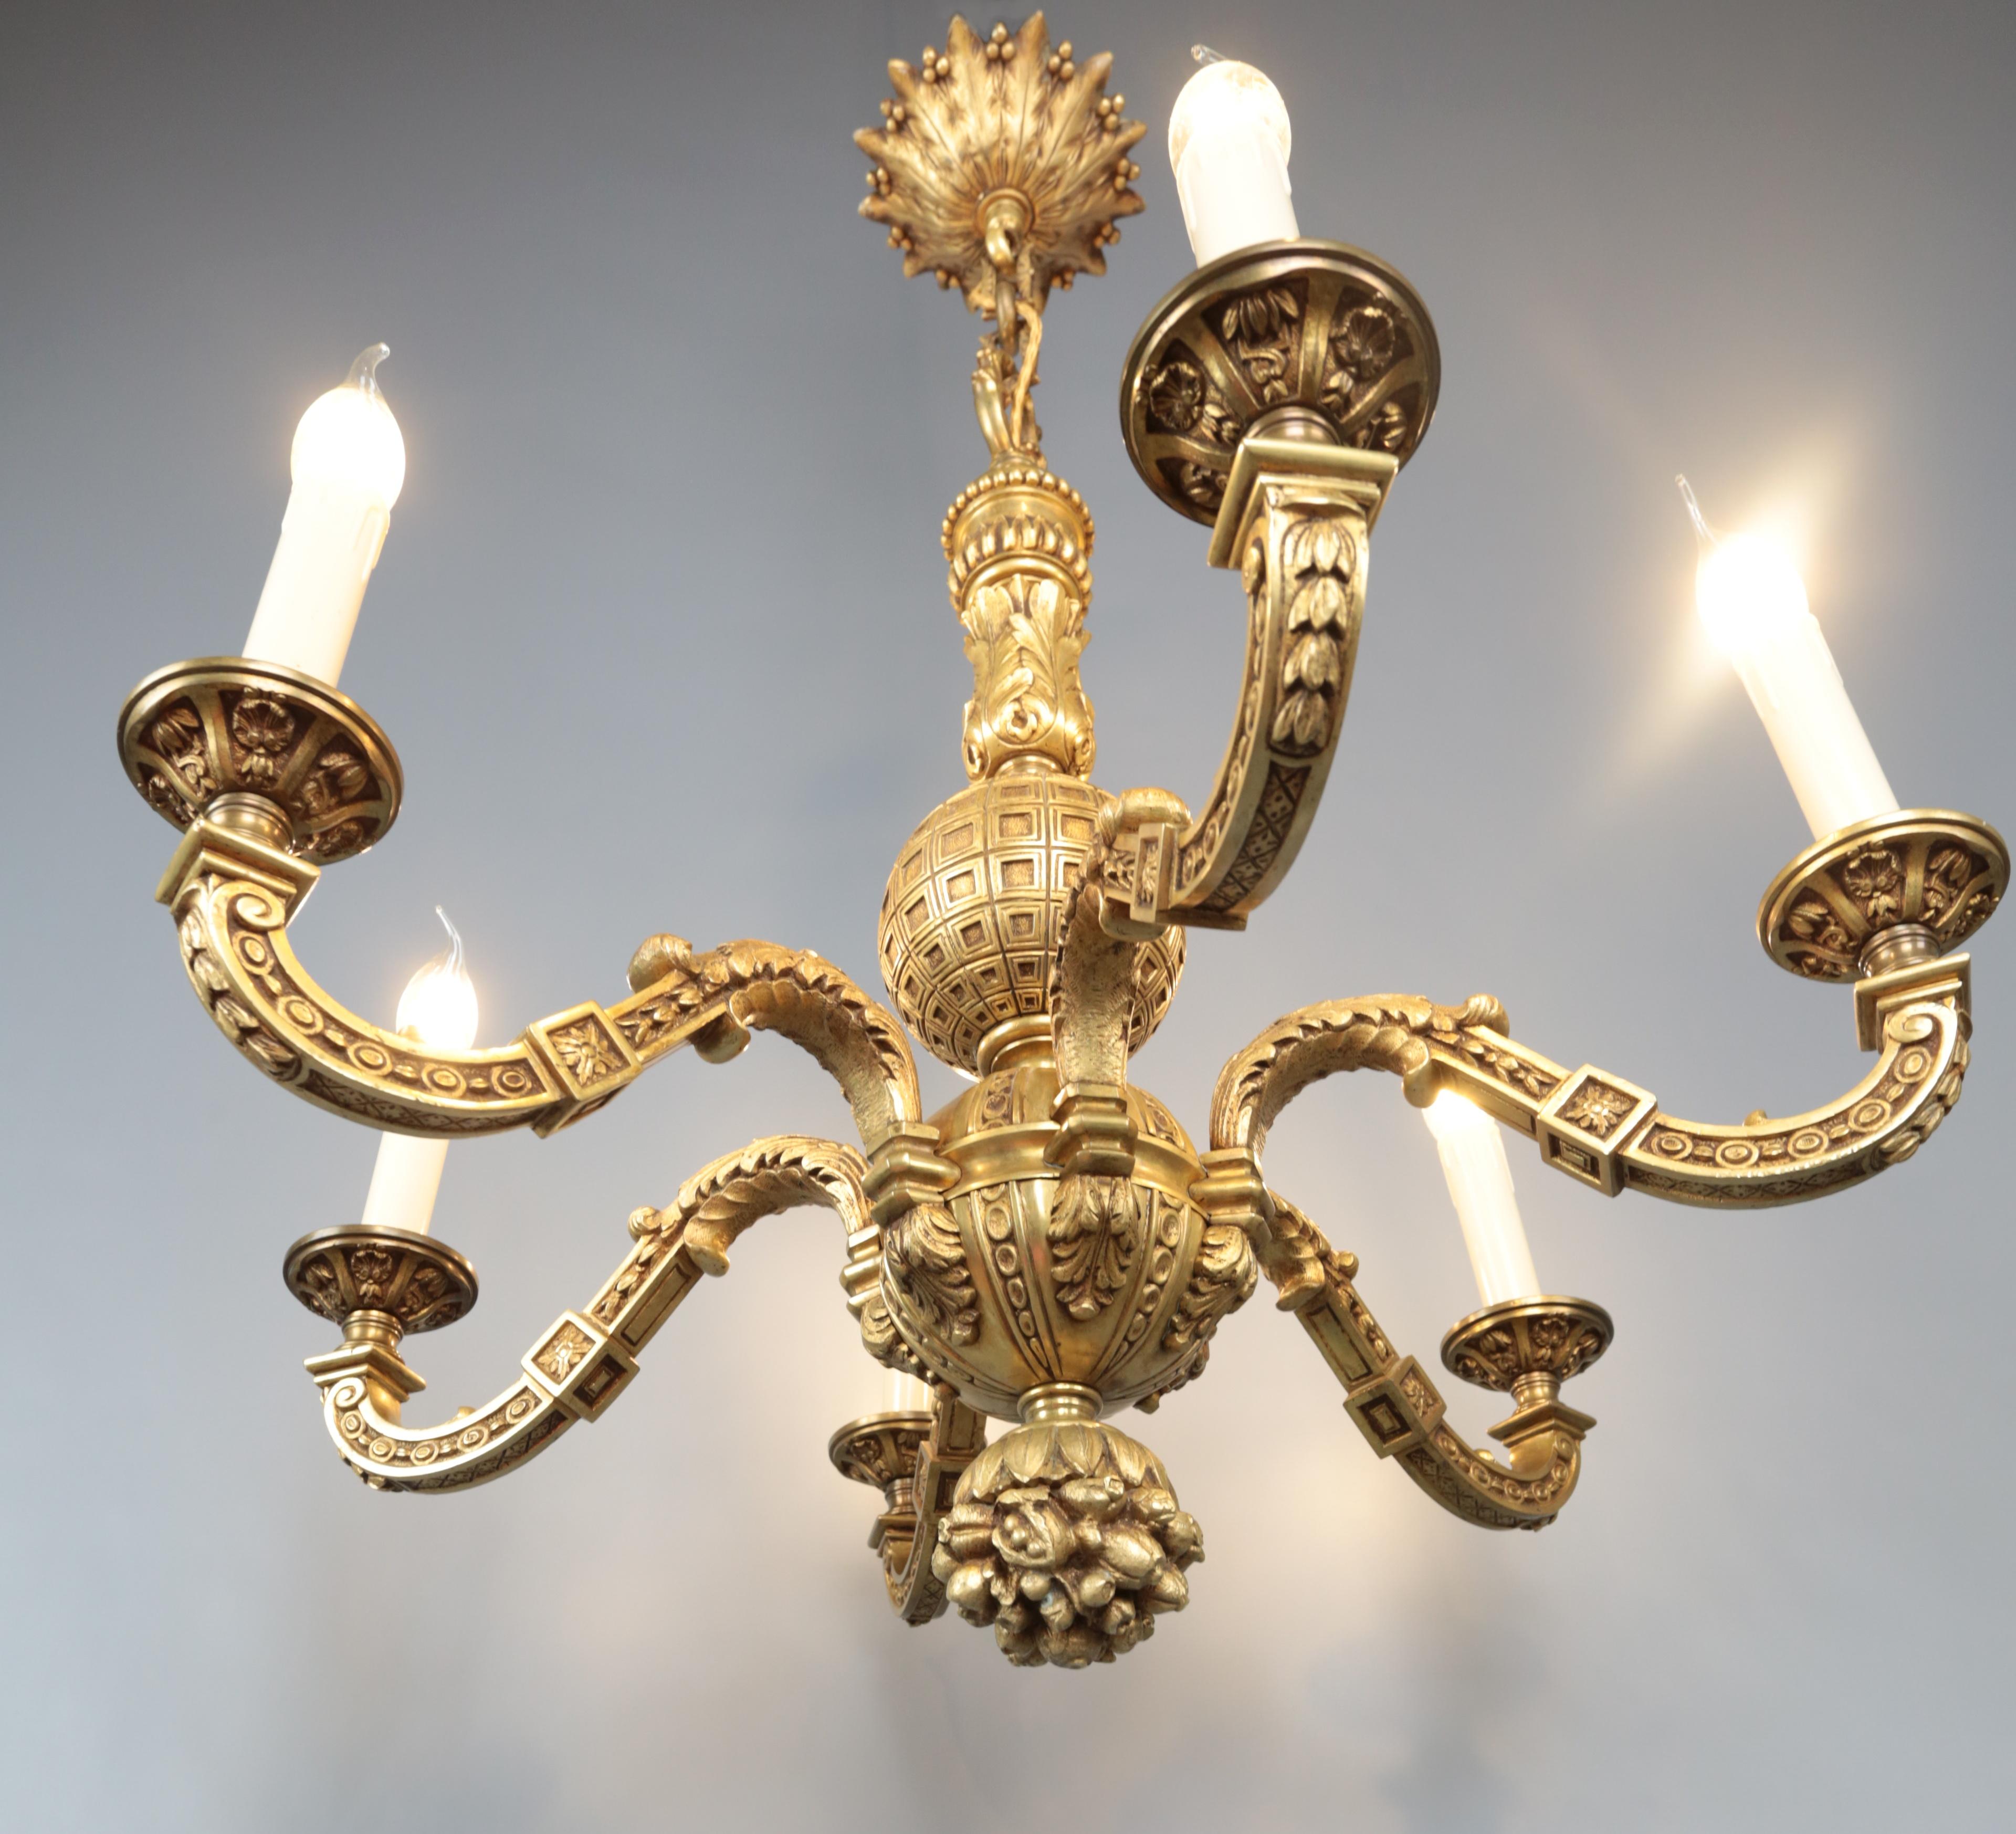 Antiker Mazarin Ananas-Kronleuchter

Sechsarmiger antiker Louis XIV-Kronleuchter aus vergoldeter Bronze mit Ananasmotiv. Hochwertige Verarbeitung. Ein seltener Typ des Mazarin-Kronleuchters. Der Kronleuchter hat ein neues Versorgungskabel im alten